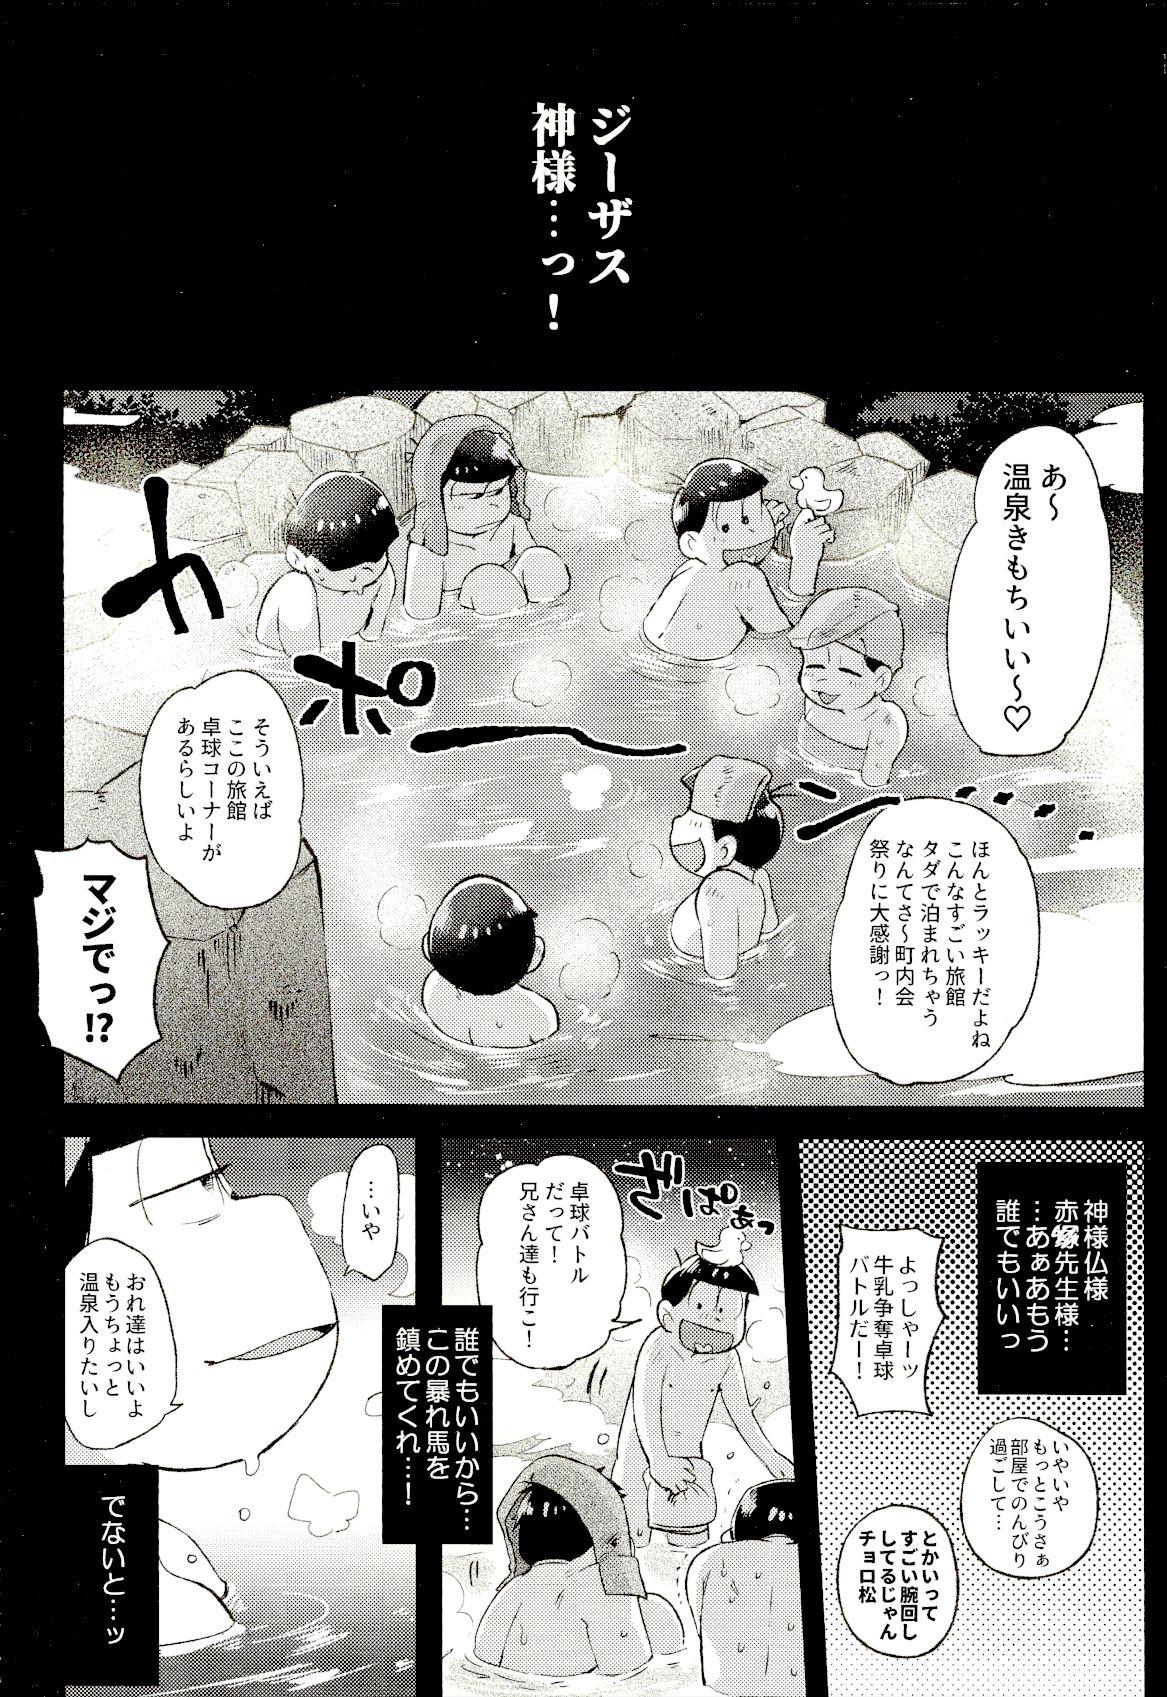 Hardcore Rough Sex Onsen Bon. - Osomatsu san Famosa - Page 2